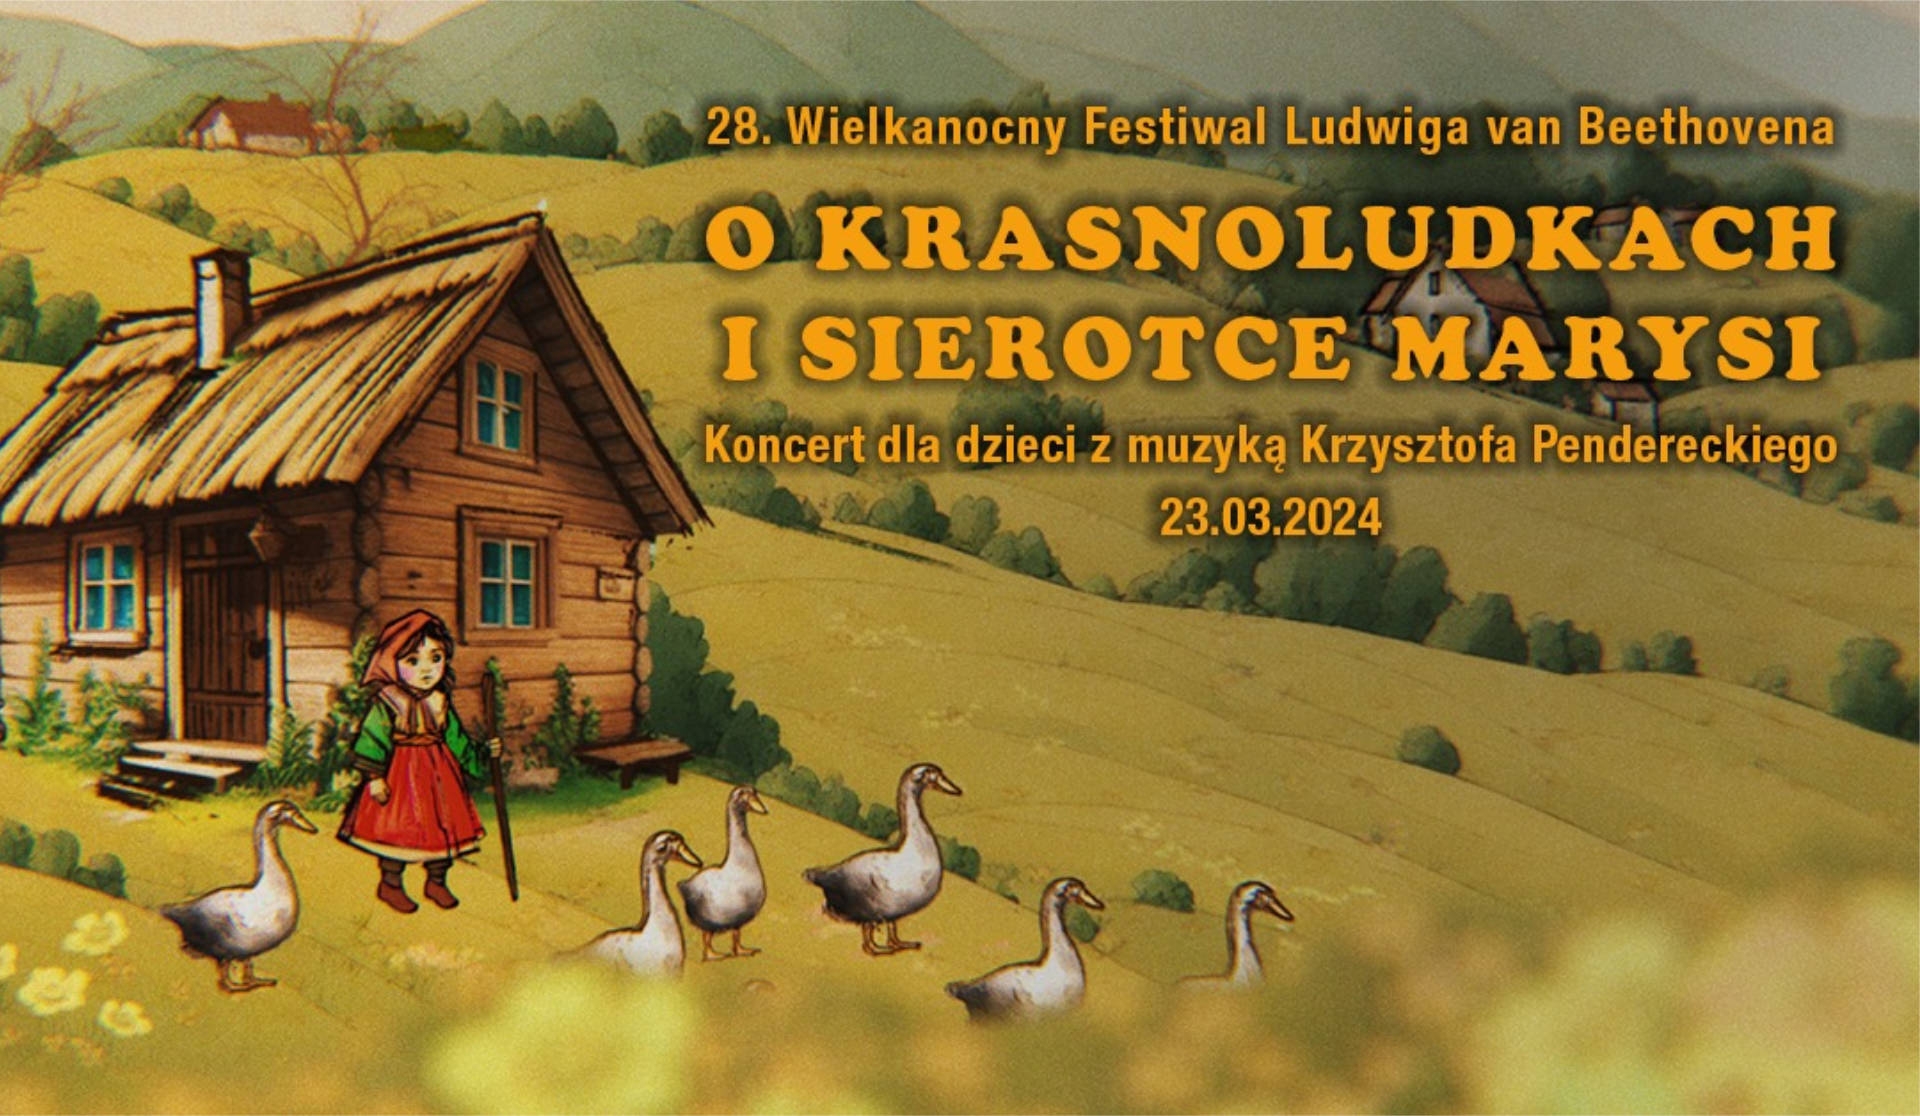 23.03.2024 – 28. Wielkanocny Festiwal Ludwiga van Beethovena, Warszawa